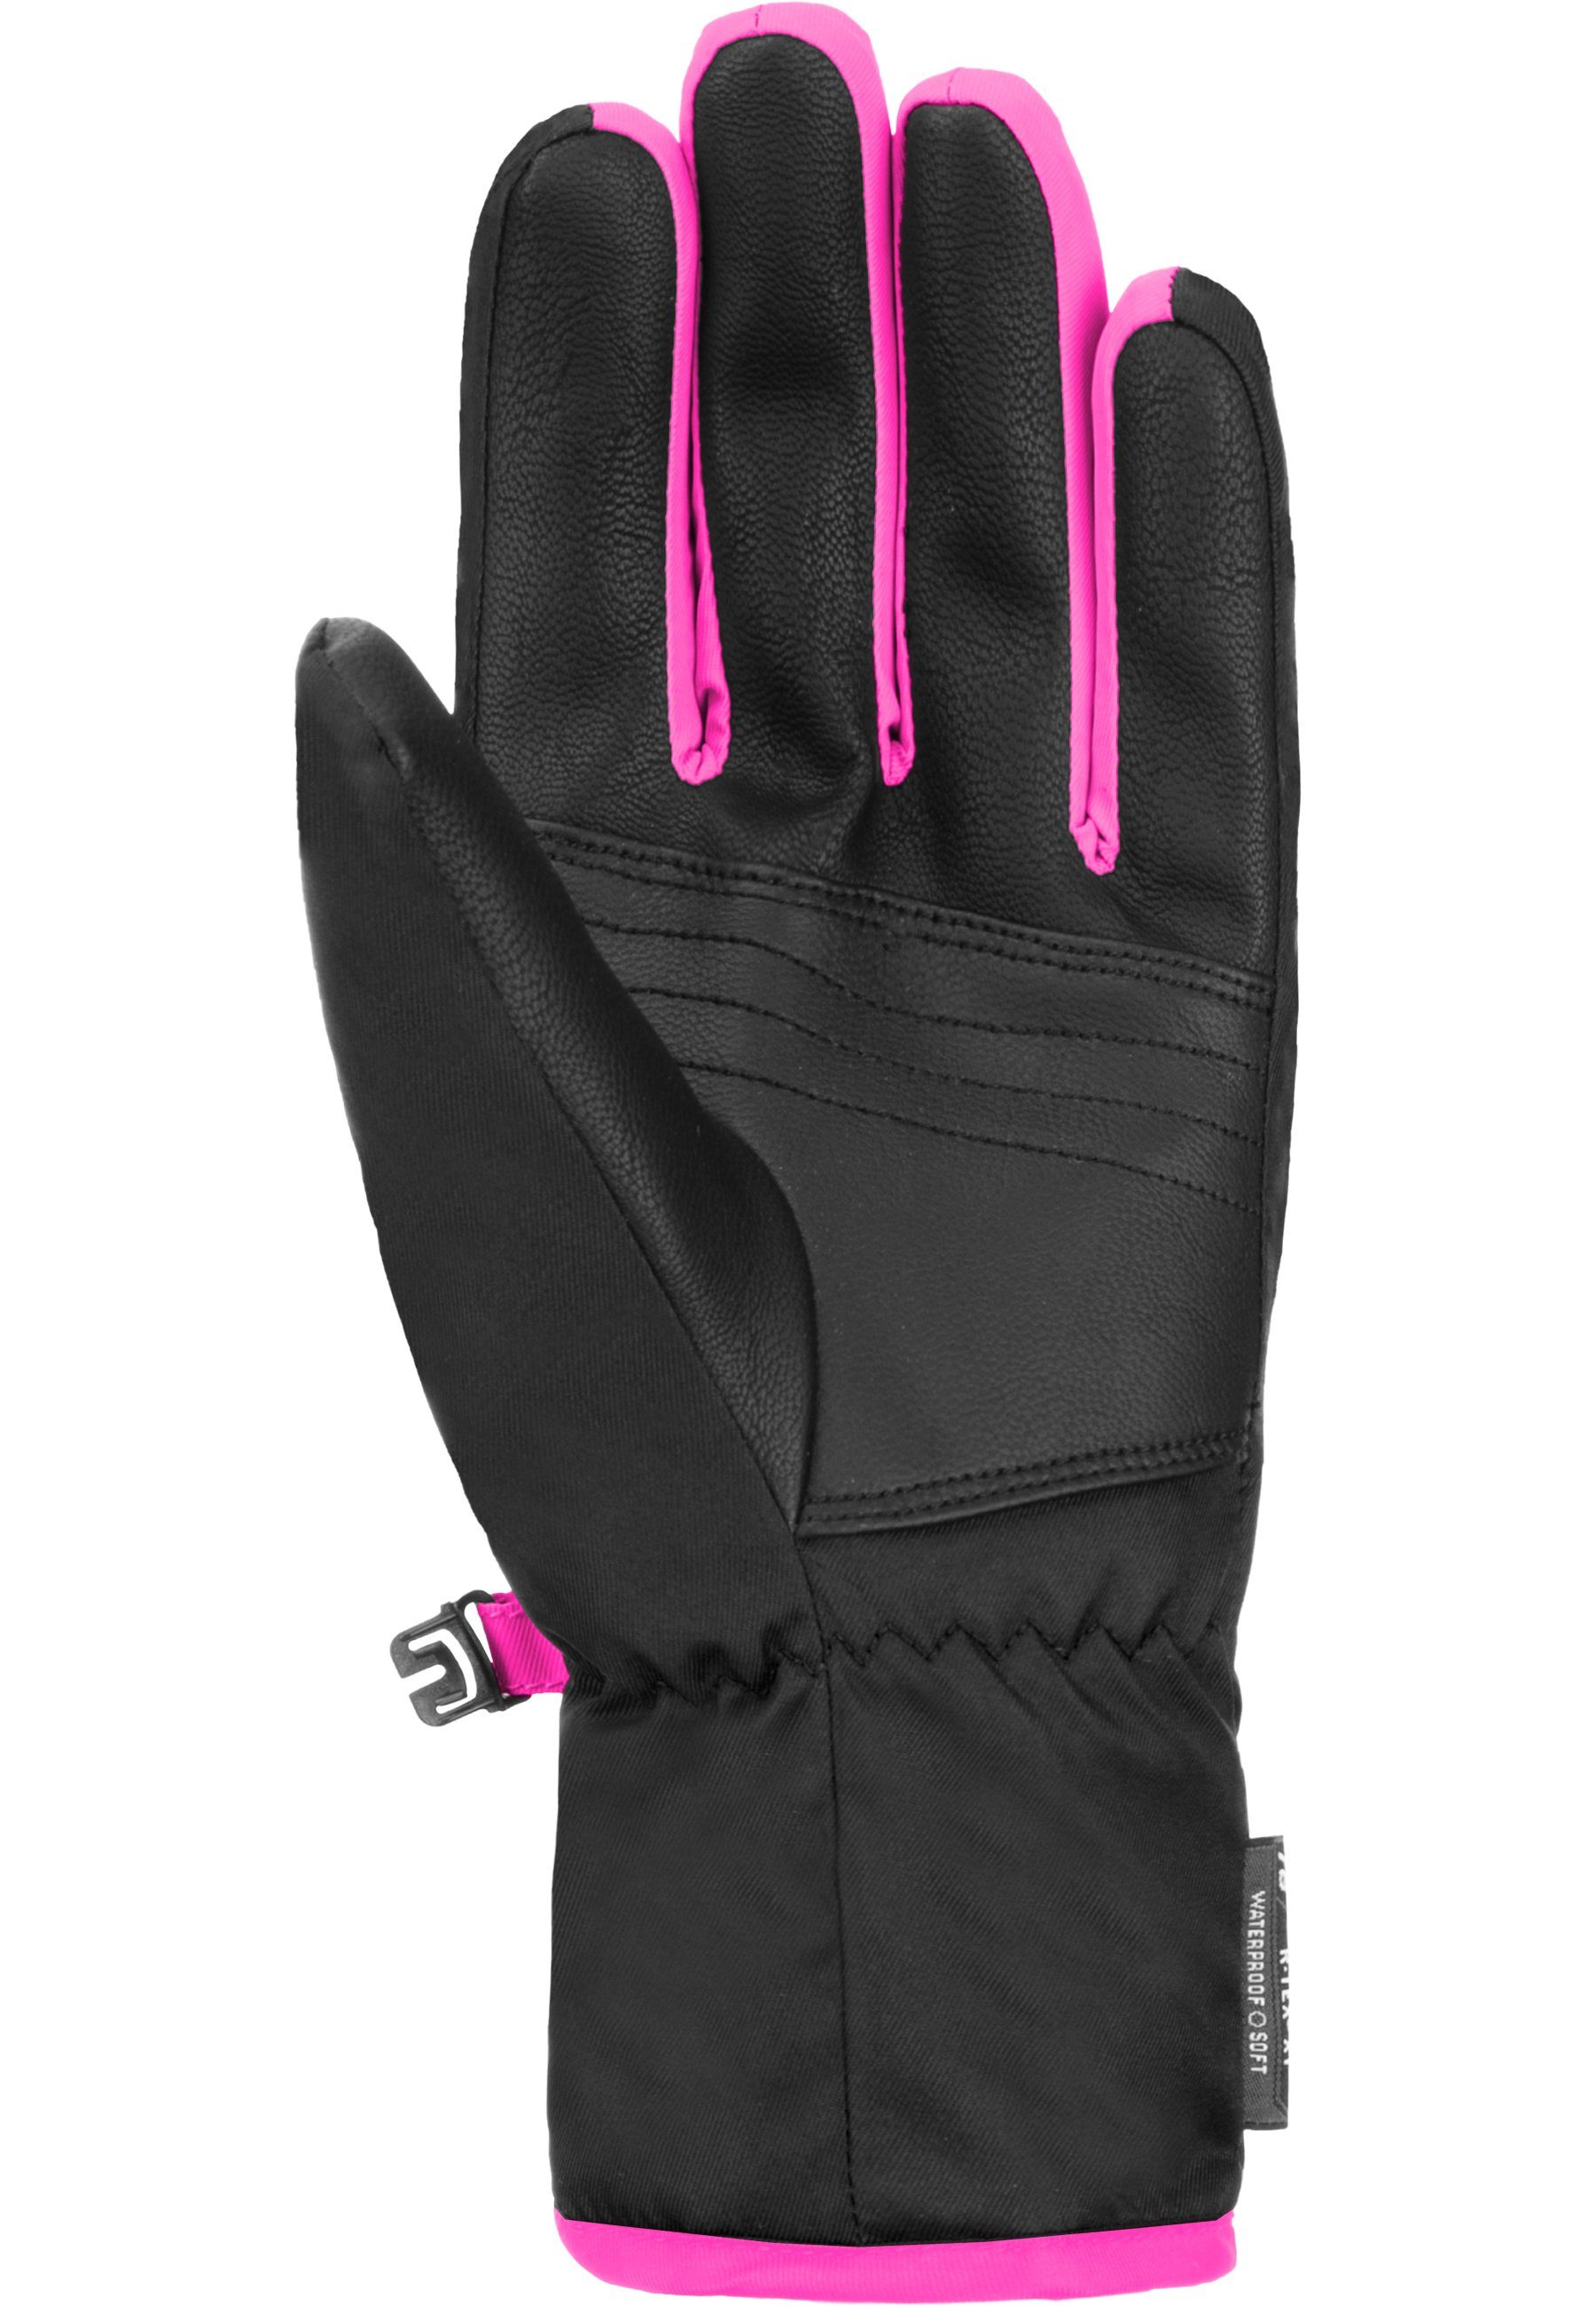 Reusch Skihandschuhe Duke R-TEX XT Junior Design in pink-schwarz sportlichem